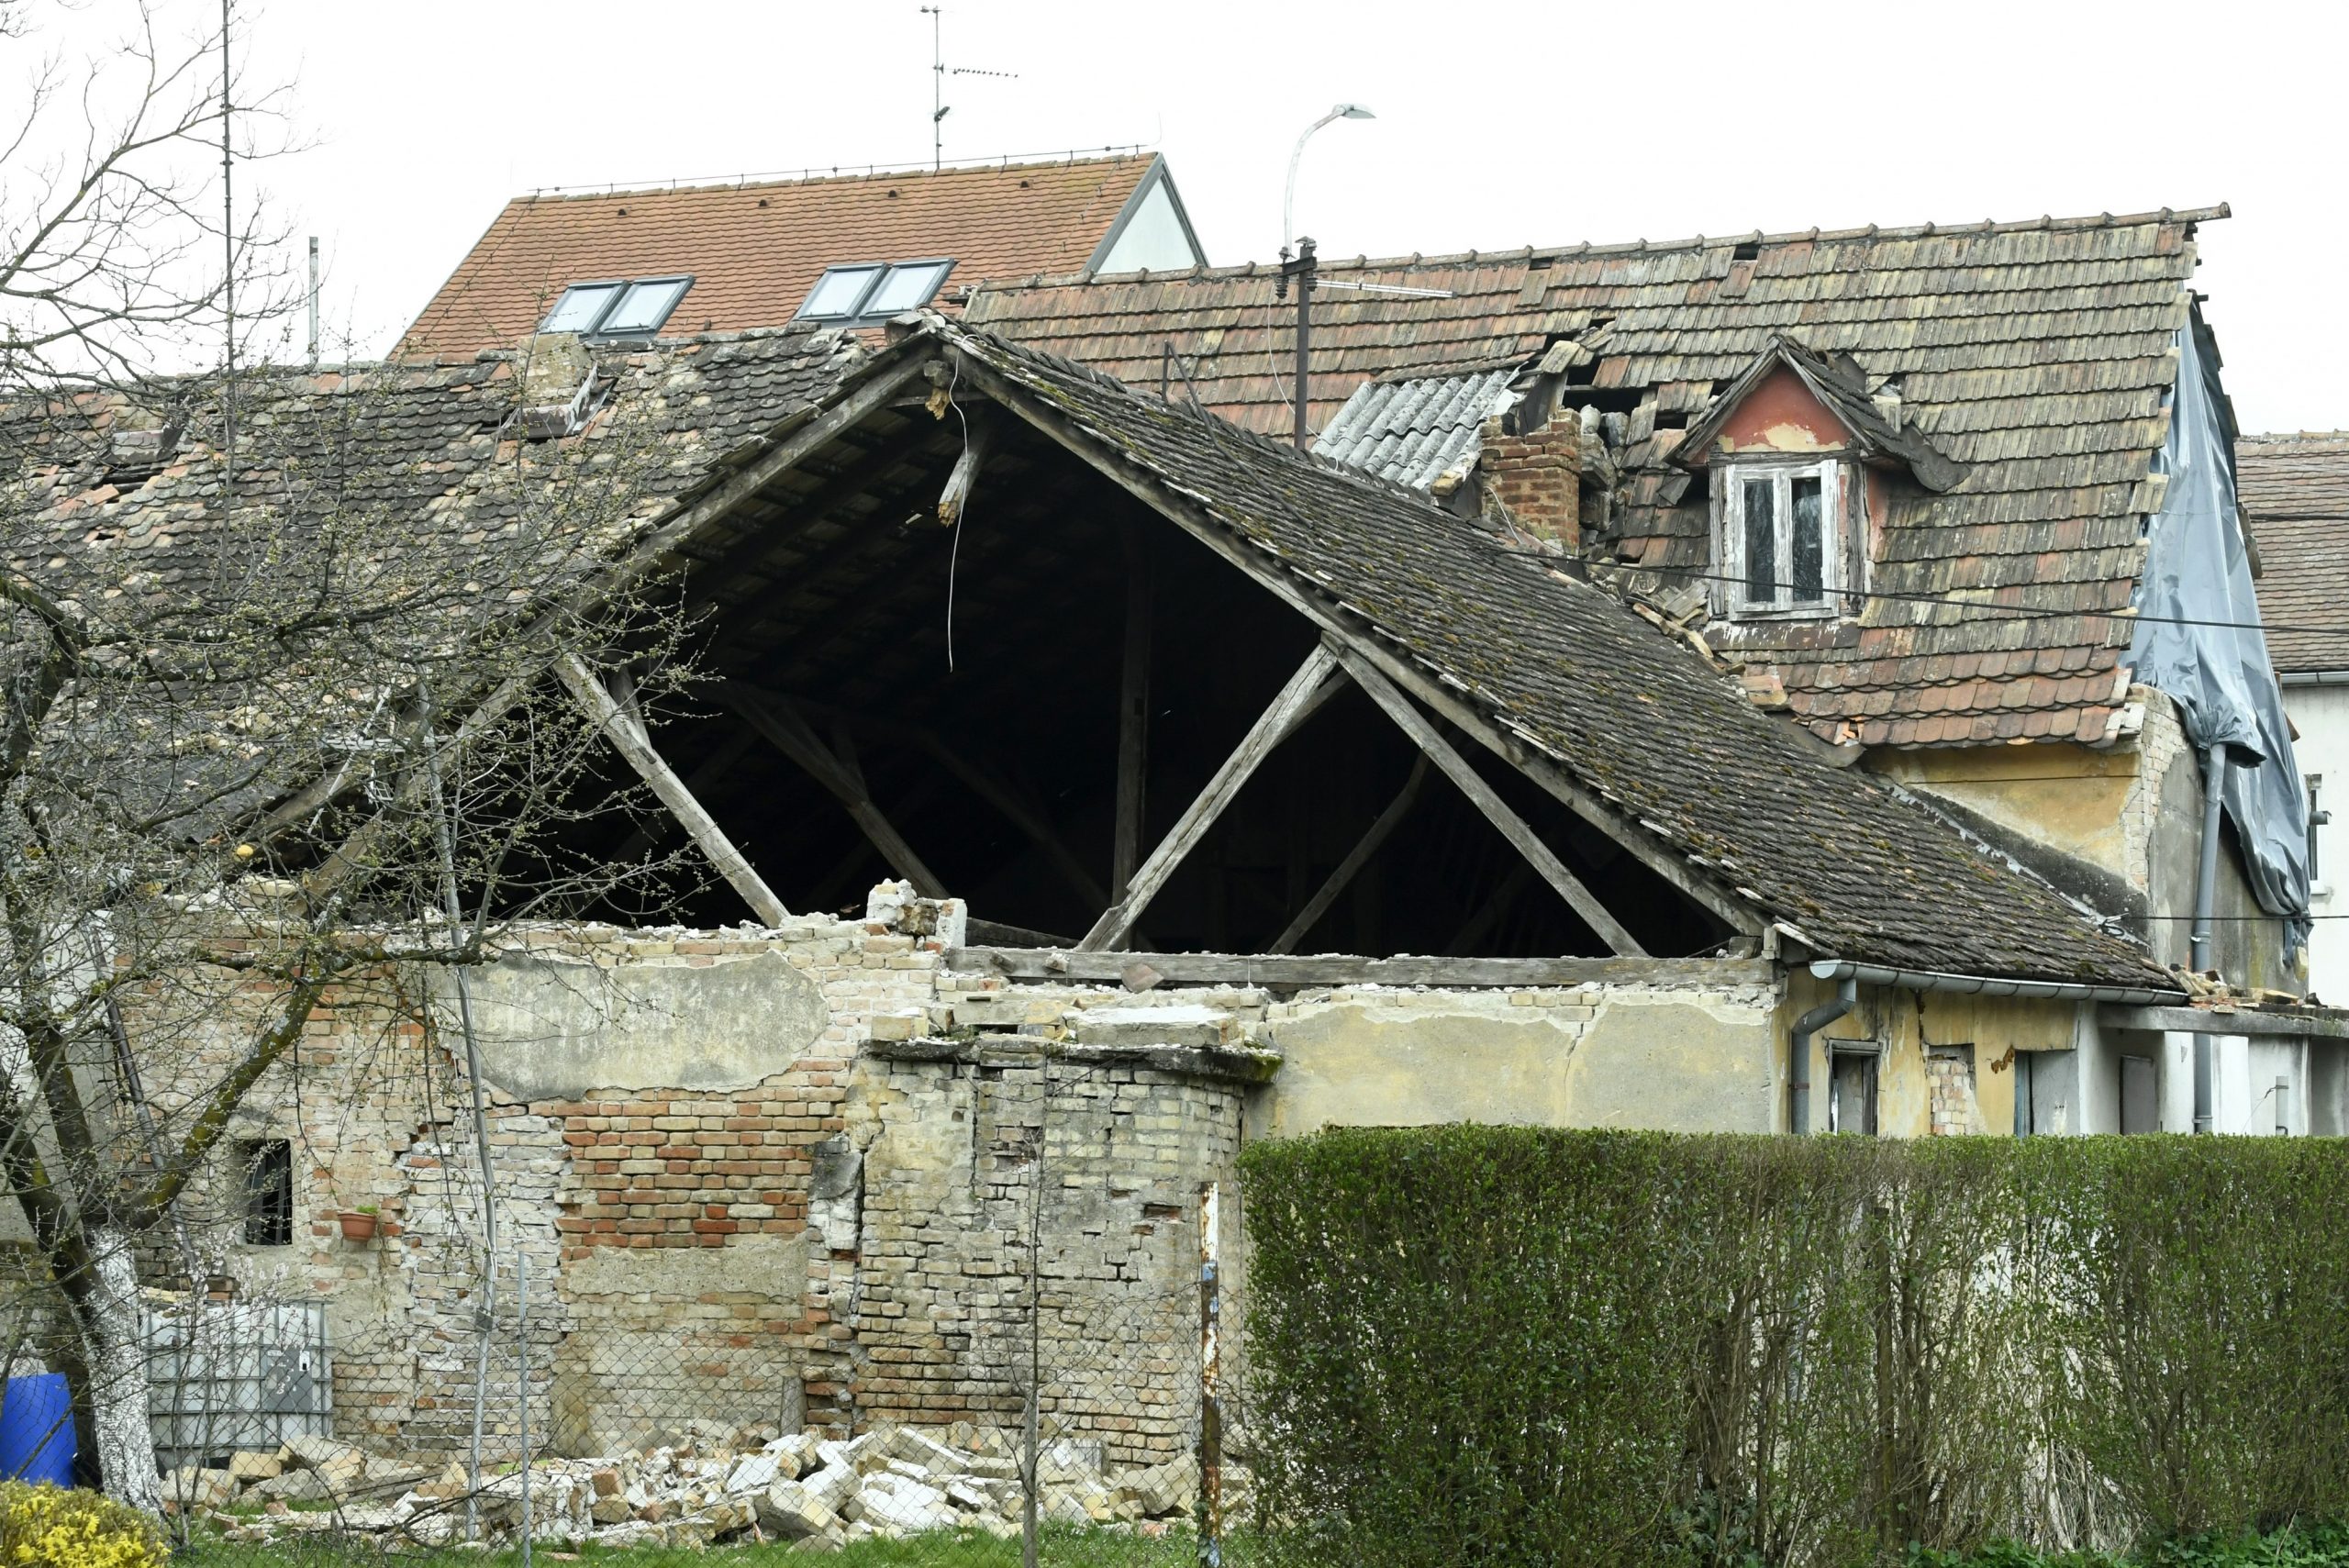 18.03.2021., Sisak - U gradu je dosta napustenih kuca na kojima nema tko sanirati u potresu ostecene krovove i prava su opasnost za prolaznike.
Photo: Nikola Cutuk/PIXSELL